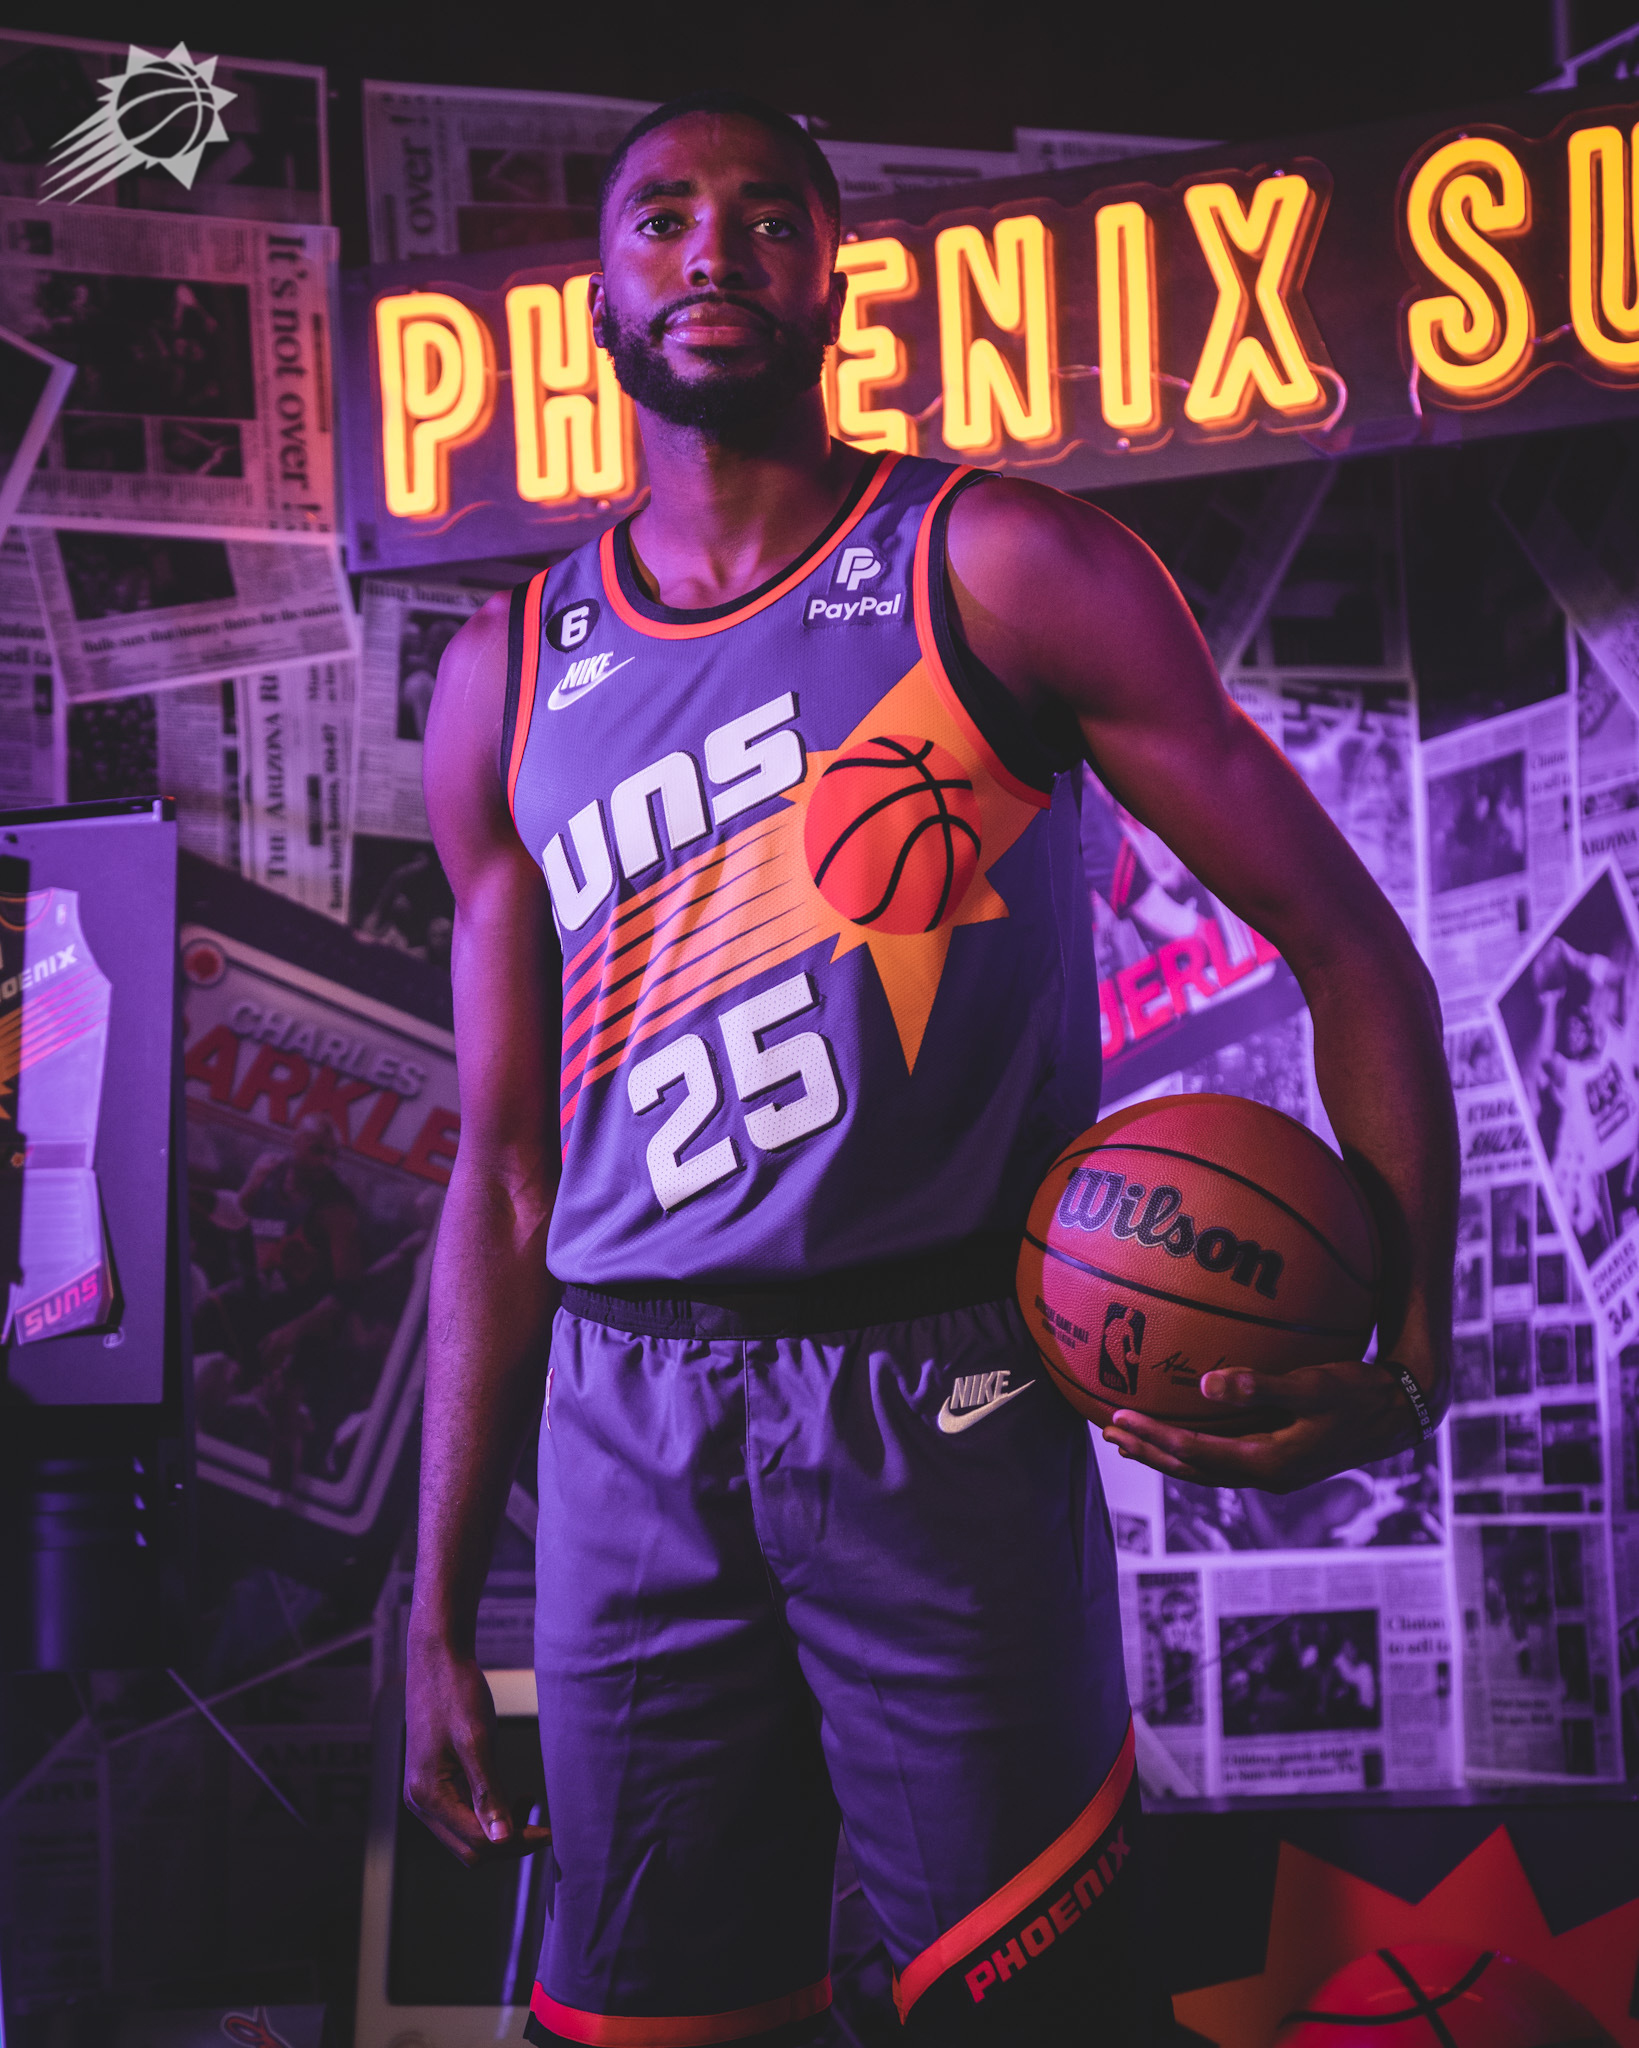 Phoenix Suns' it classic